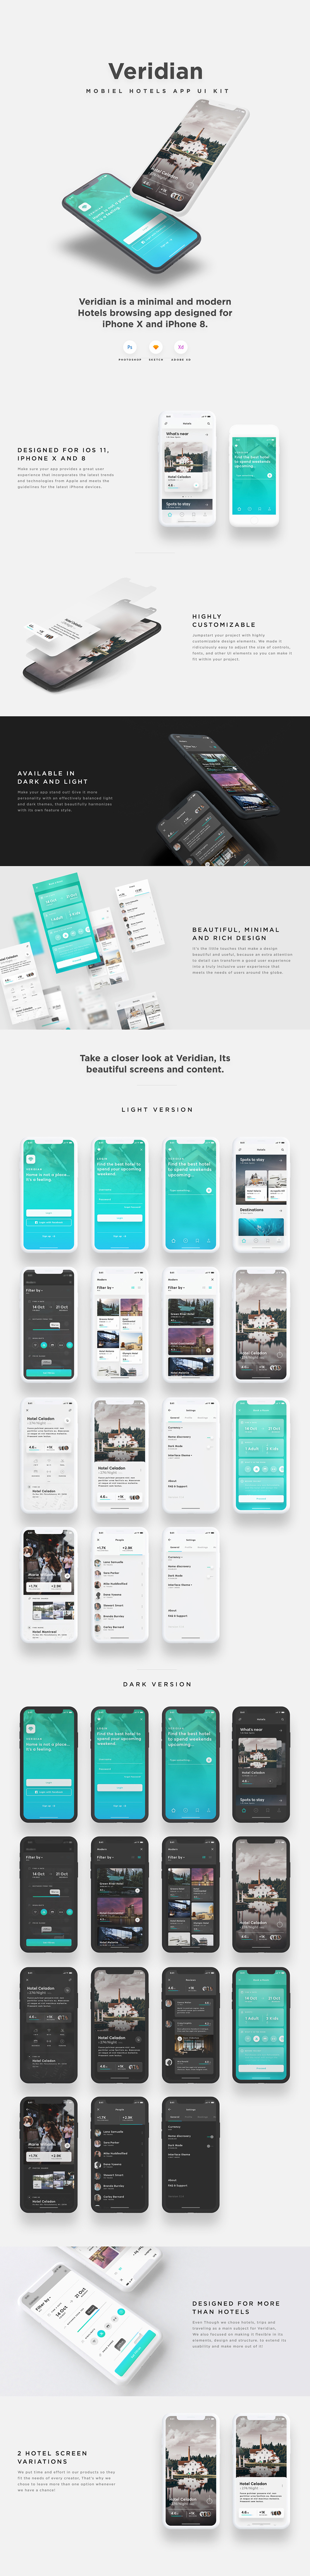 Veridian - Hotel Mobile App UI Kit - Adobe XD UI Kit Probe